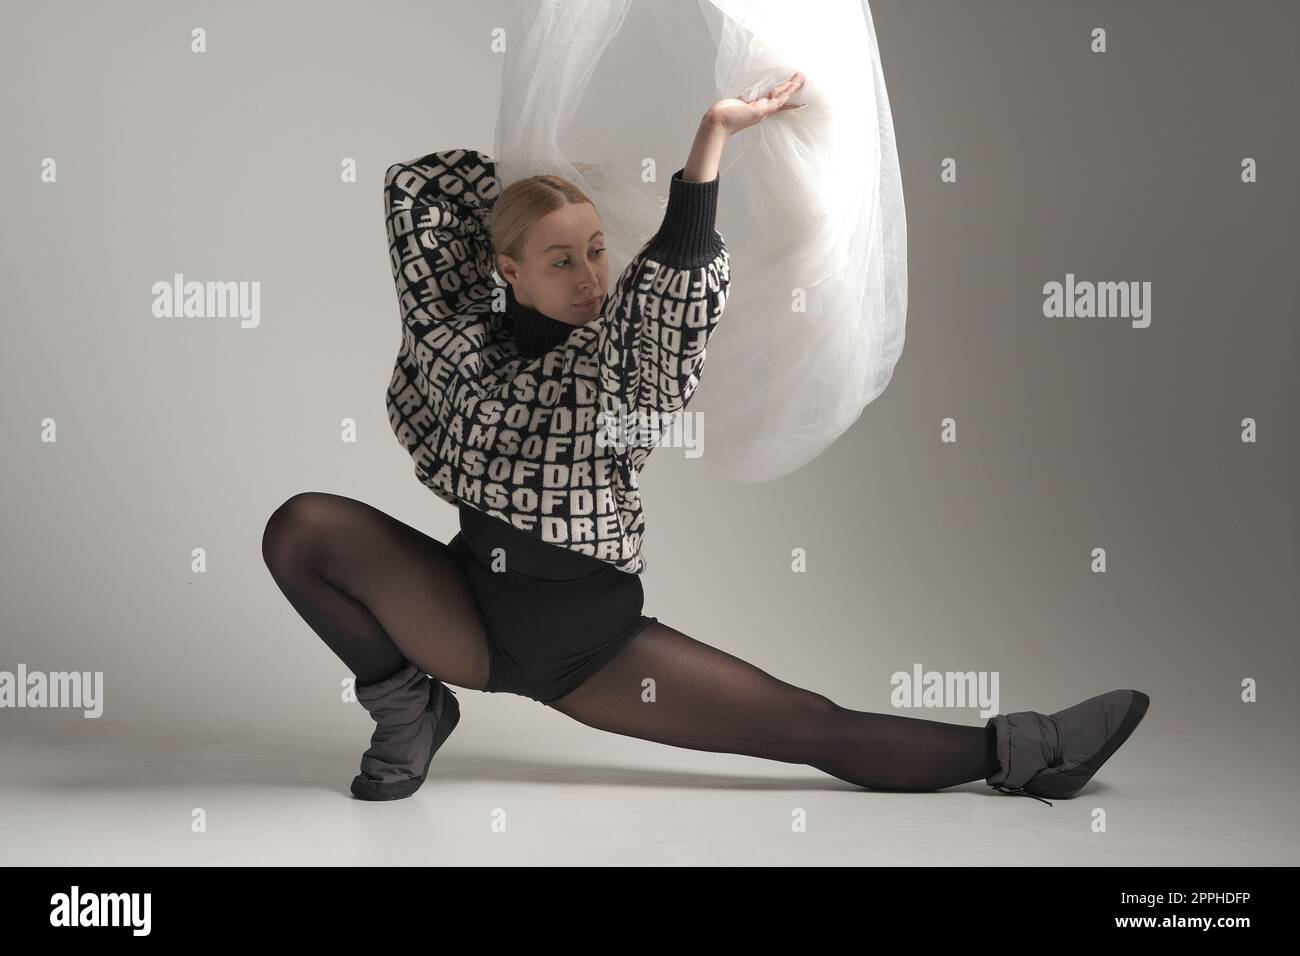 Ballerina mit Seidenstoff, moderne Balletttänzerin mit wellenförmigem weißem Stoff, grauer Hintergrund. Mit Text auf Pullover, VON dem DU TRÄUMST Stockfoto